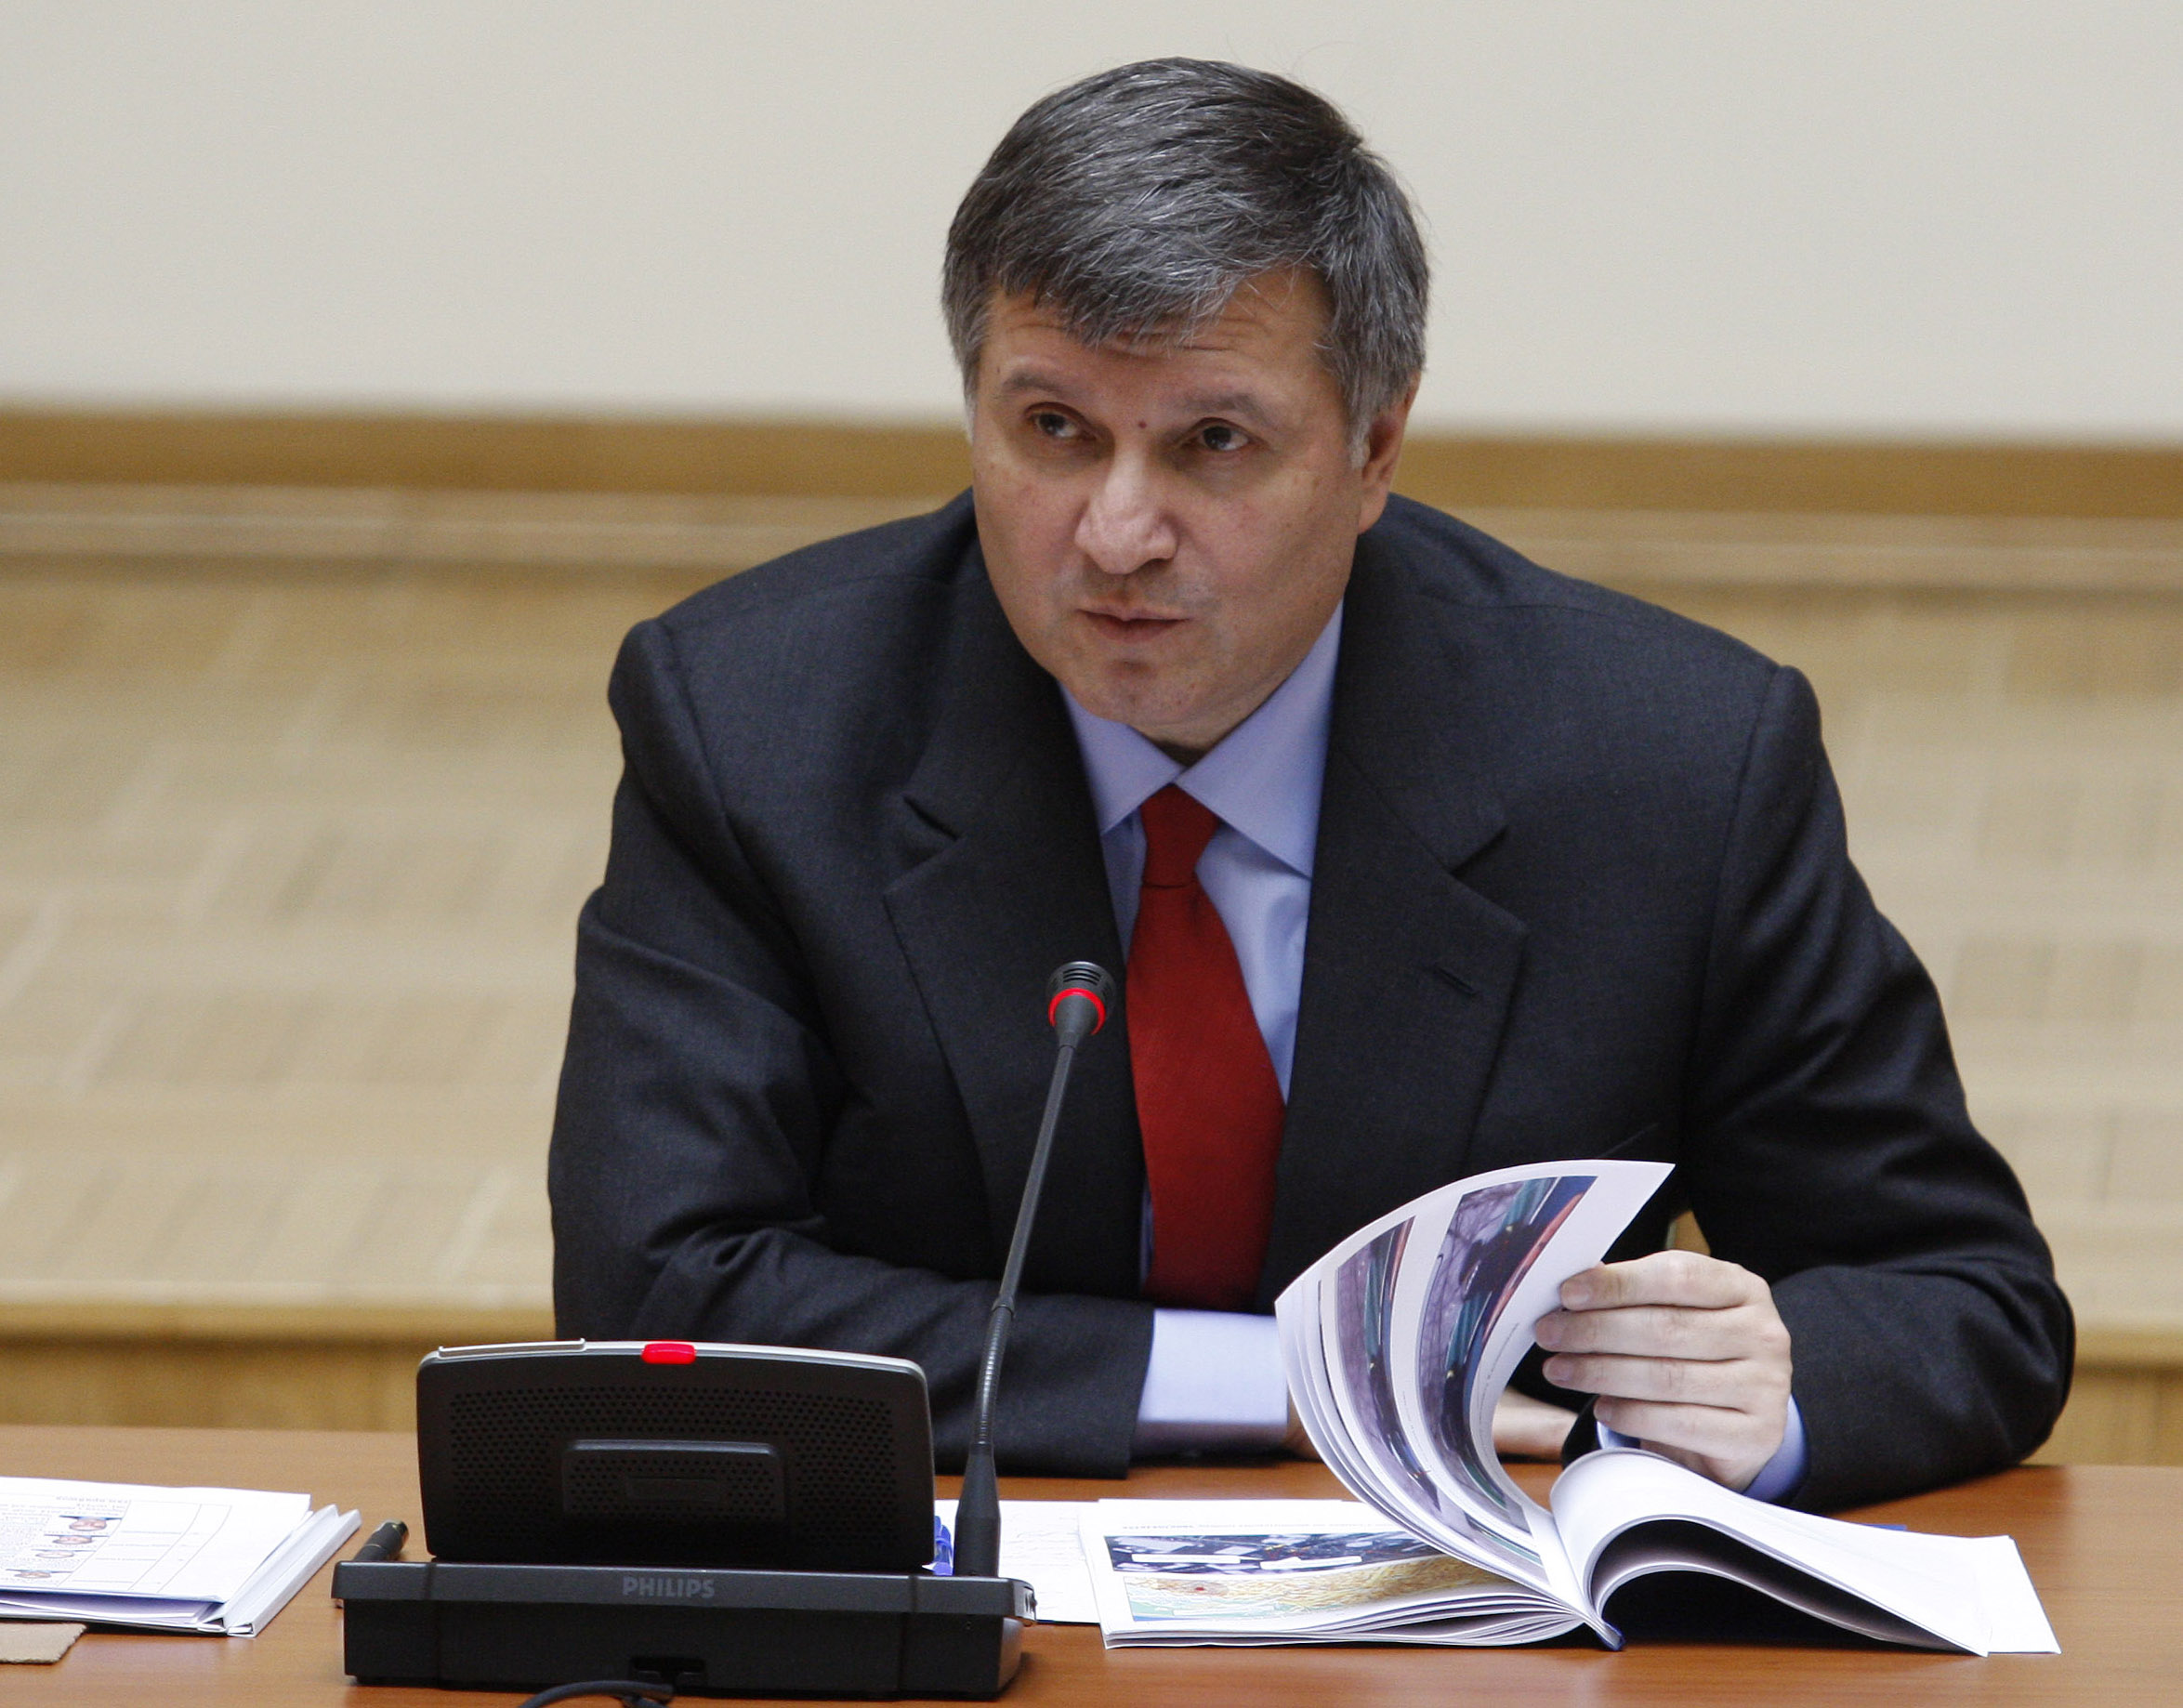 Bộ trưởng nội vụ Avakov cáo buộc tổ chức chống tham nhũng 'ném mèo chết' vào cảnh sát.